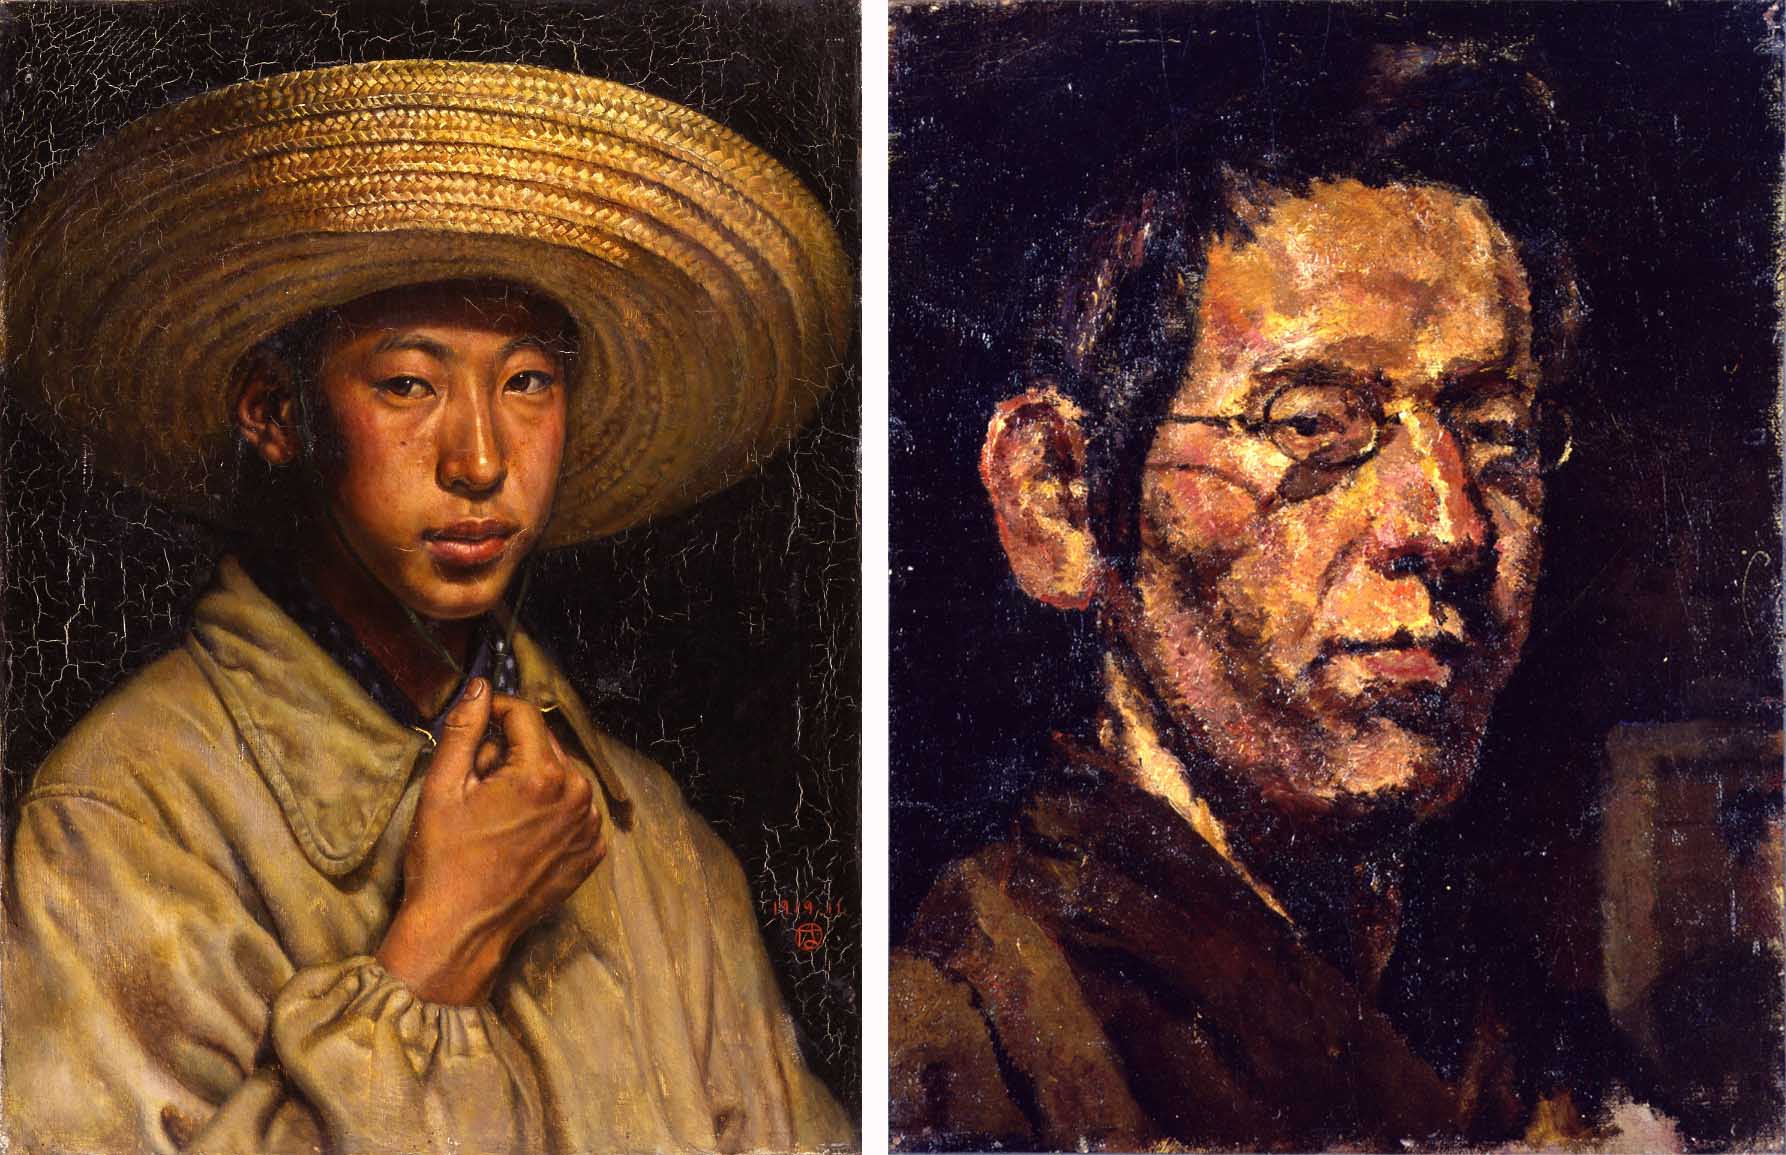 (左から)宮脇晴「夜の自画像」1919年、岸田劉生「自画像」1913年頃